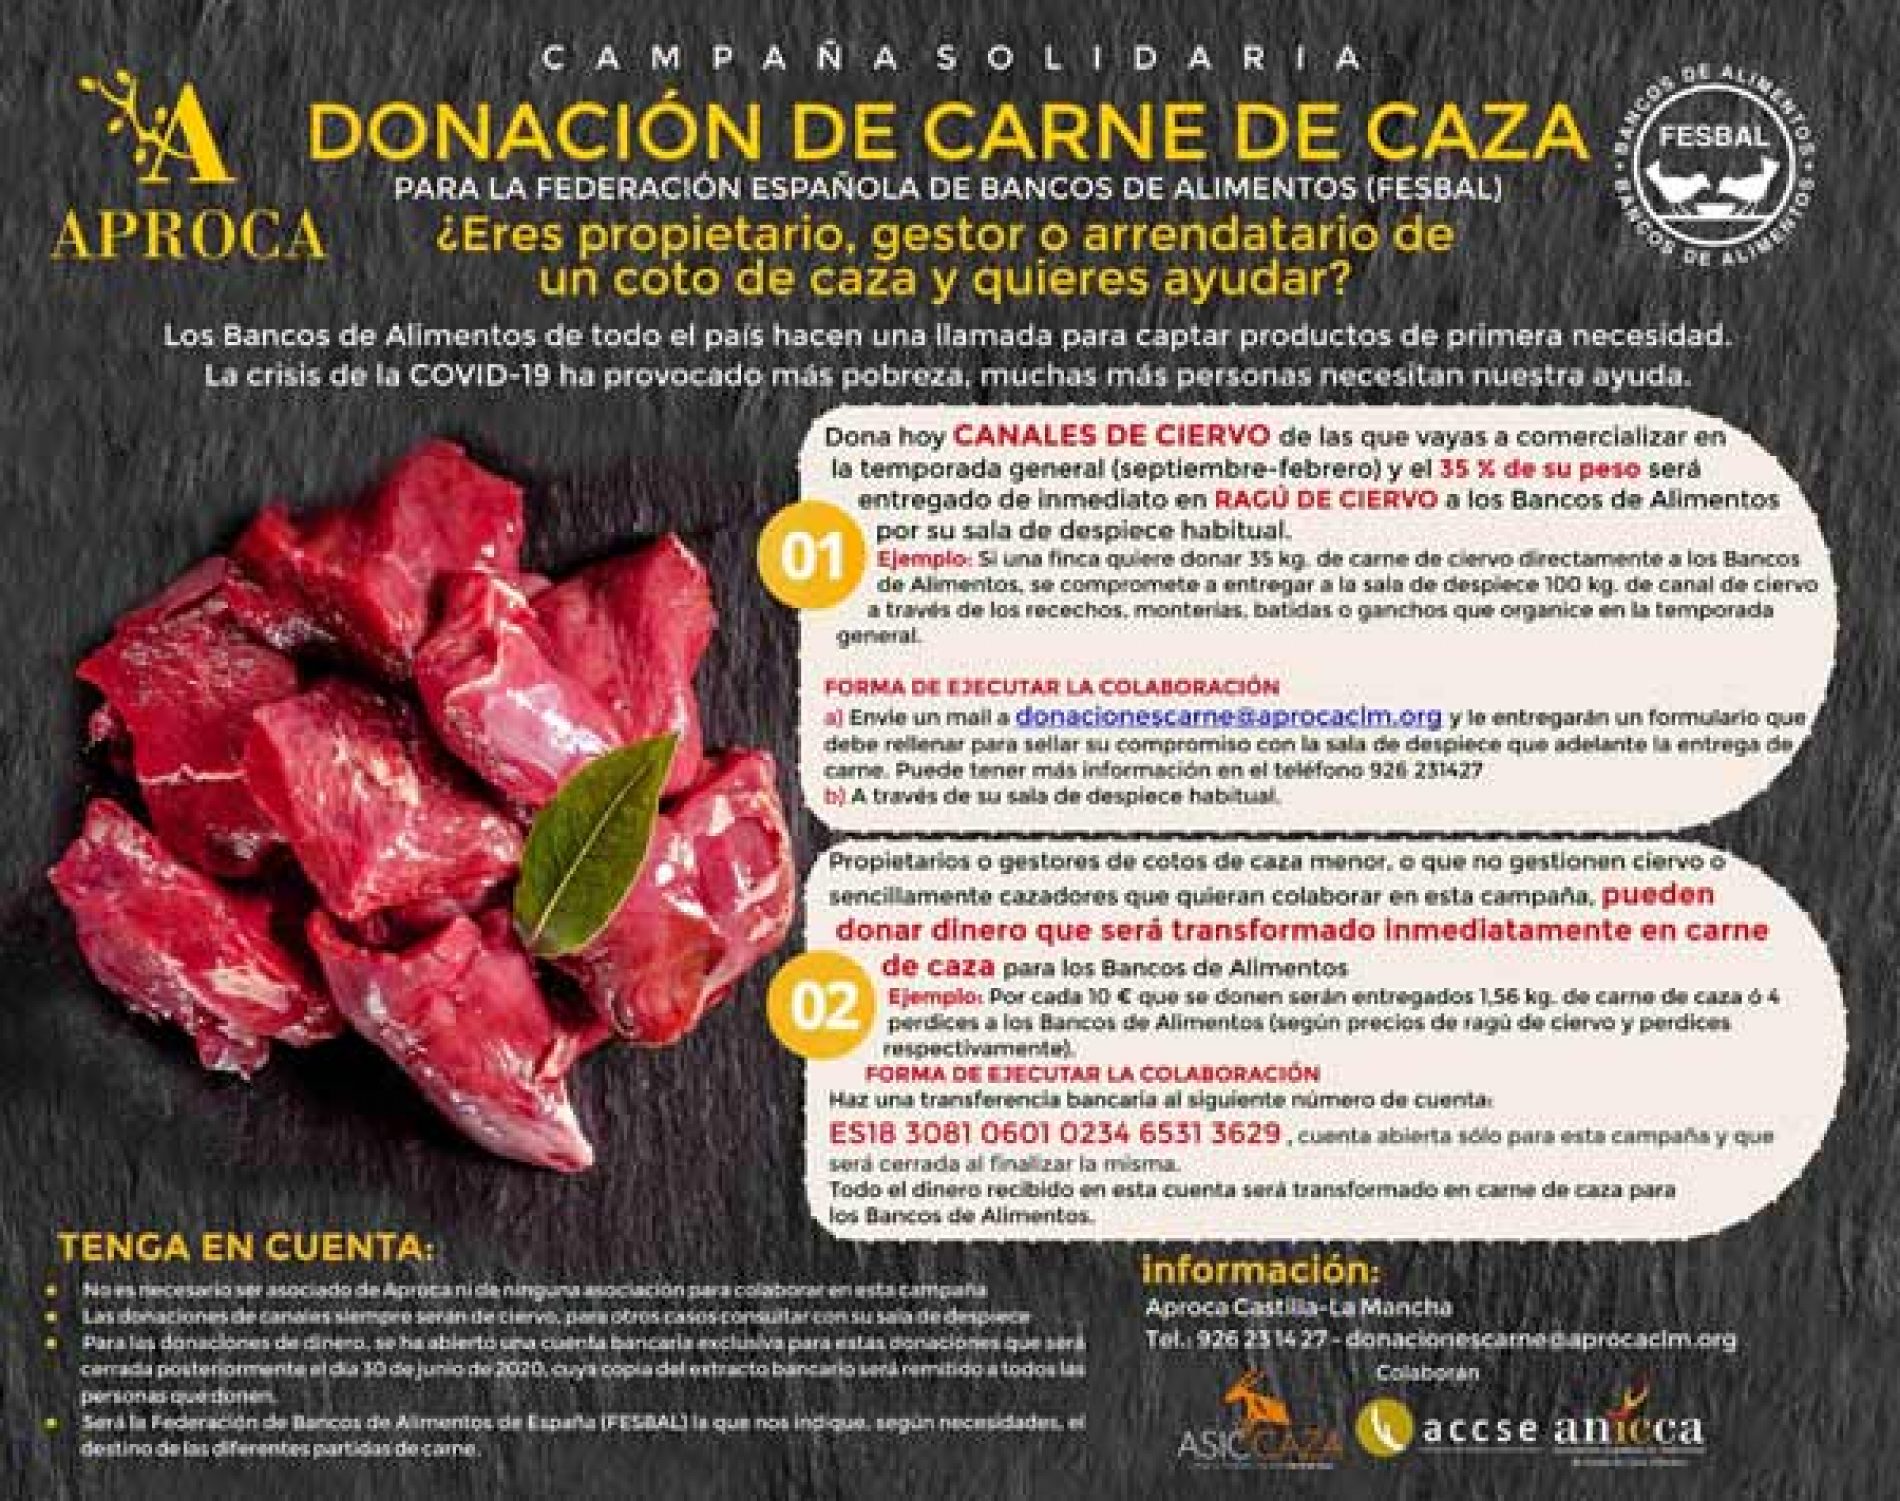 APROCA lanza una campaña solidaria para la donación de carne de caza a los Bancos de Alimentos